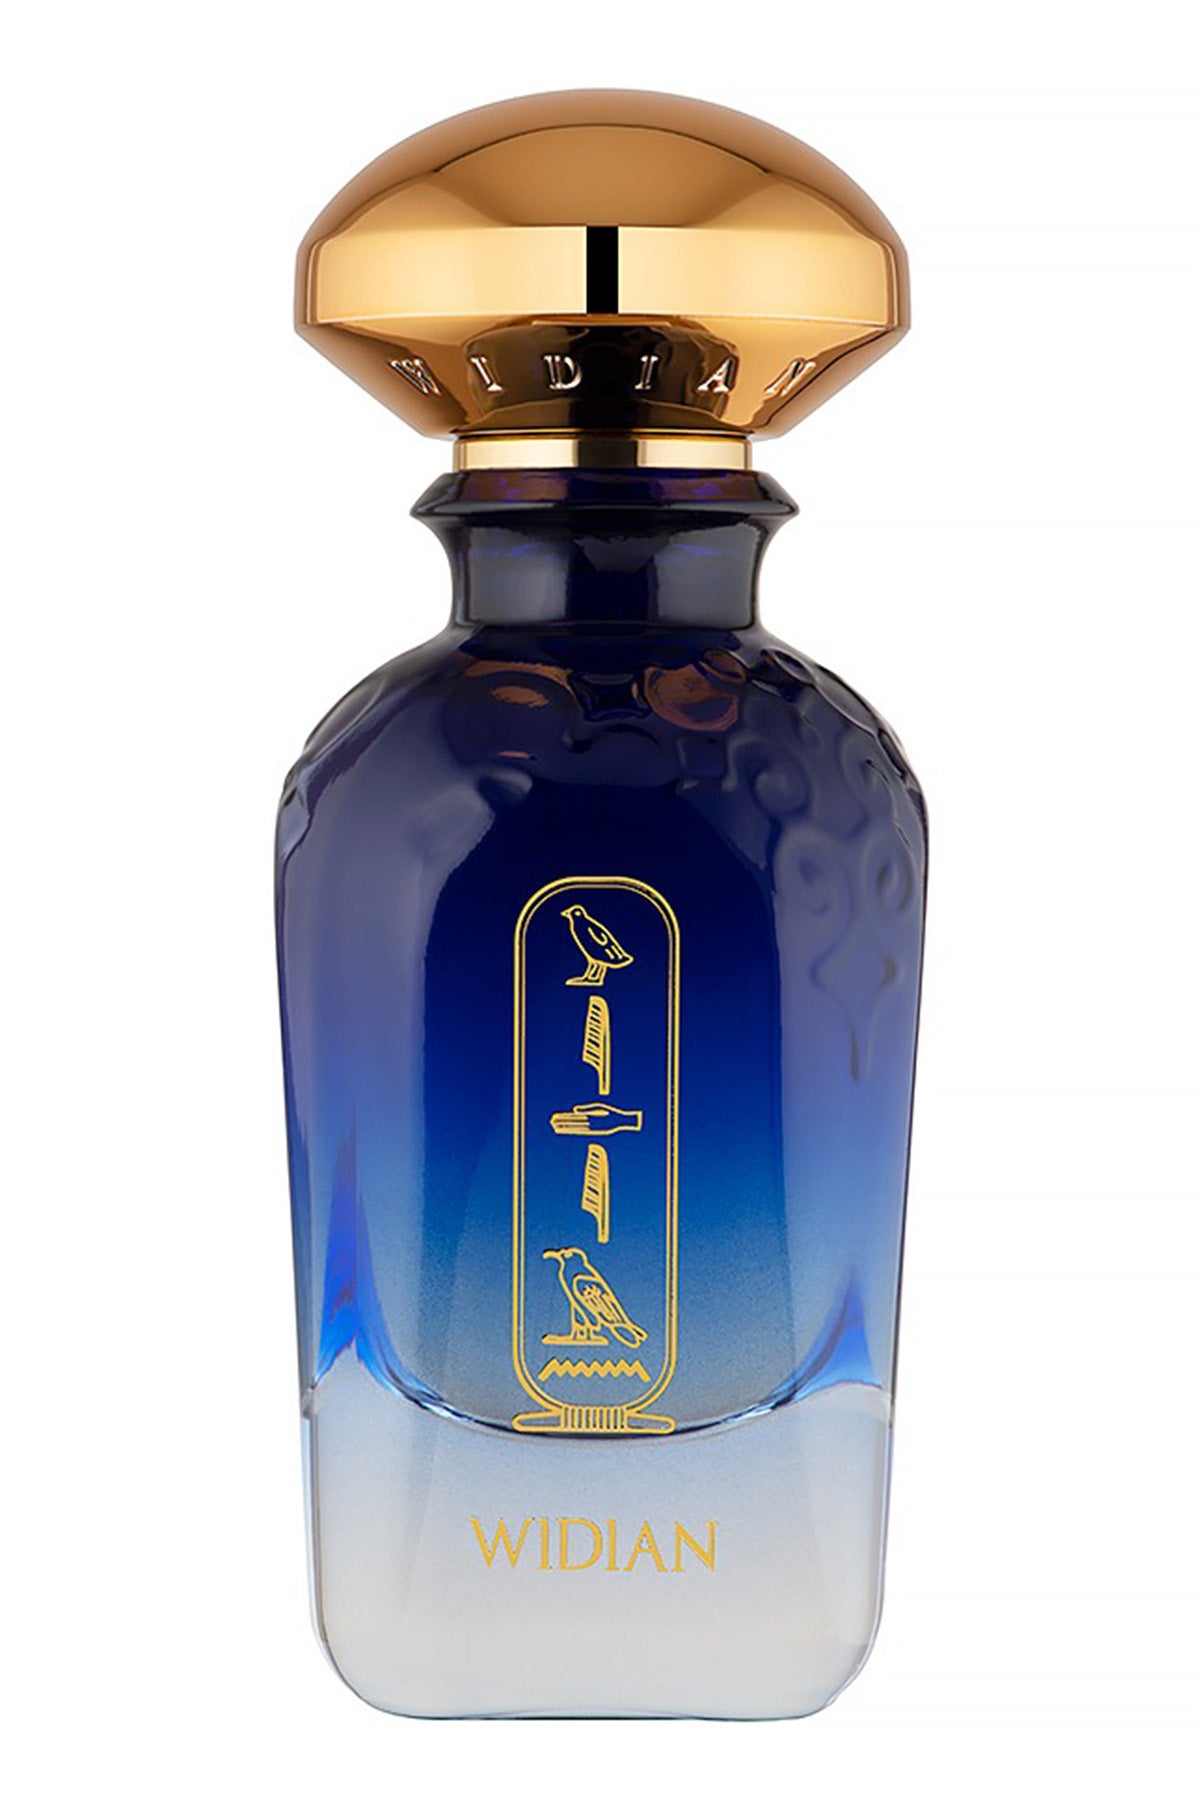 Widian Aswan Extrait de Parfum